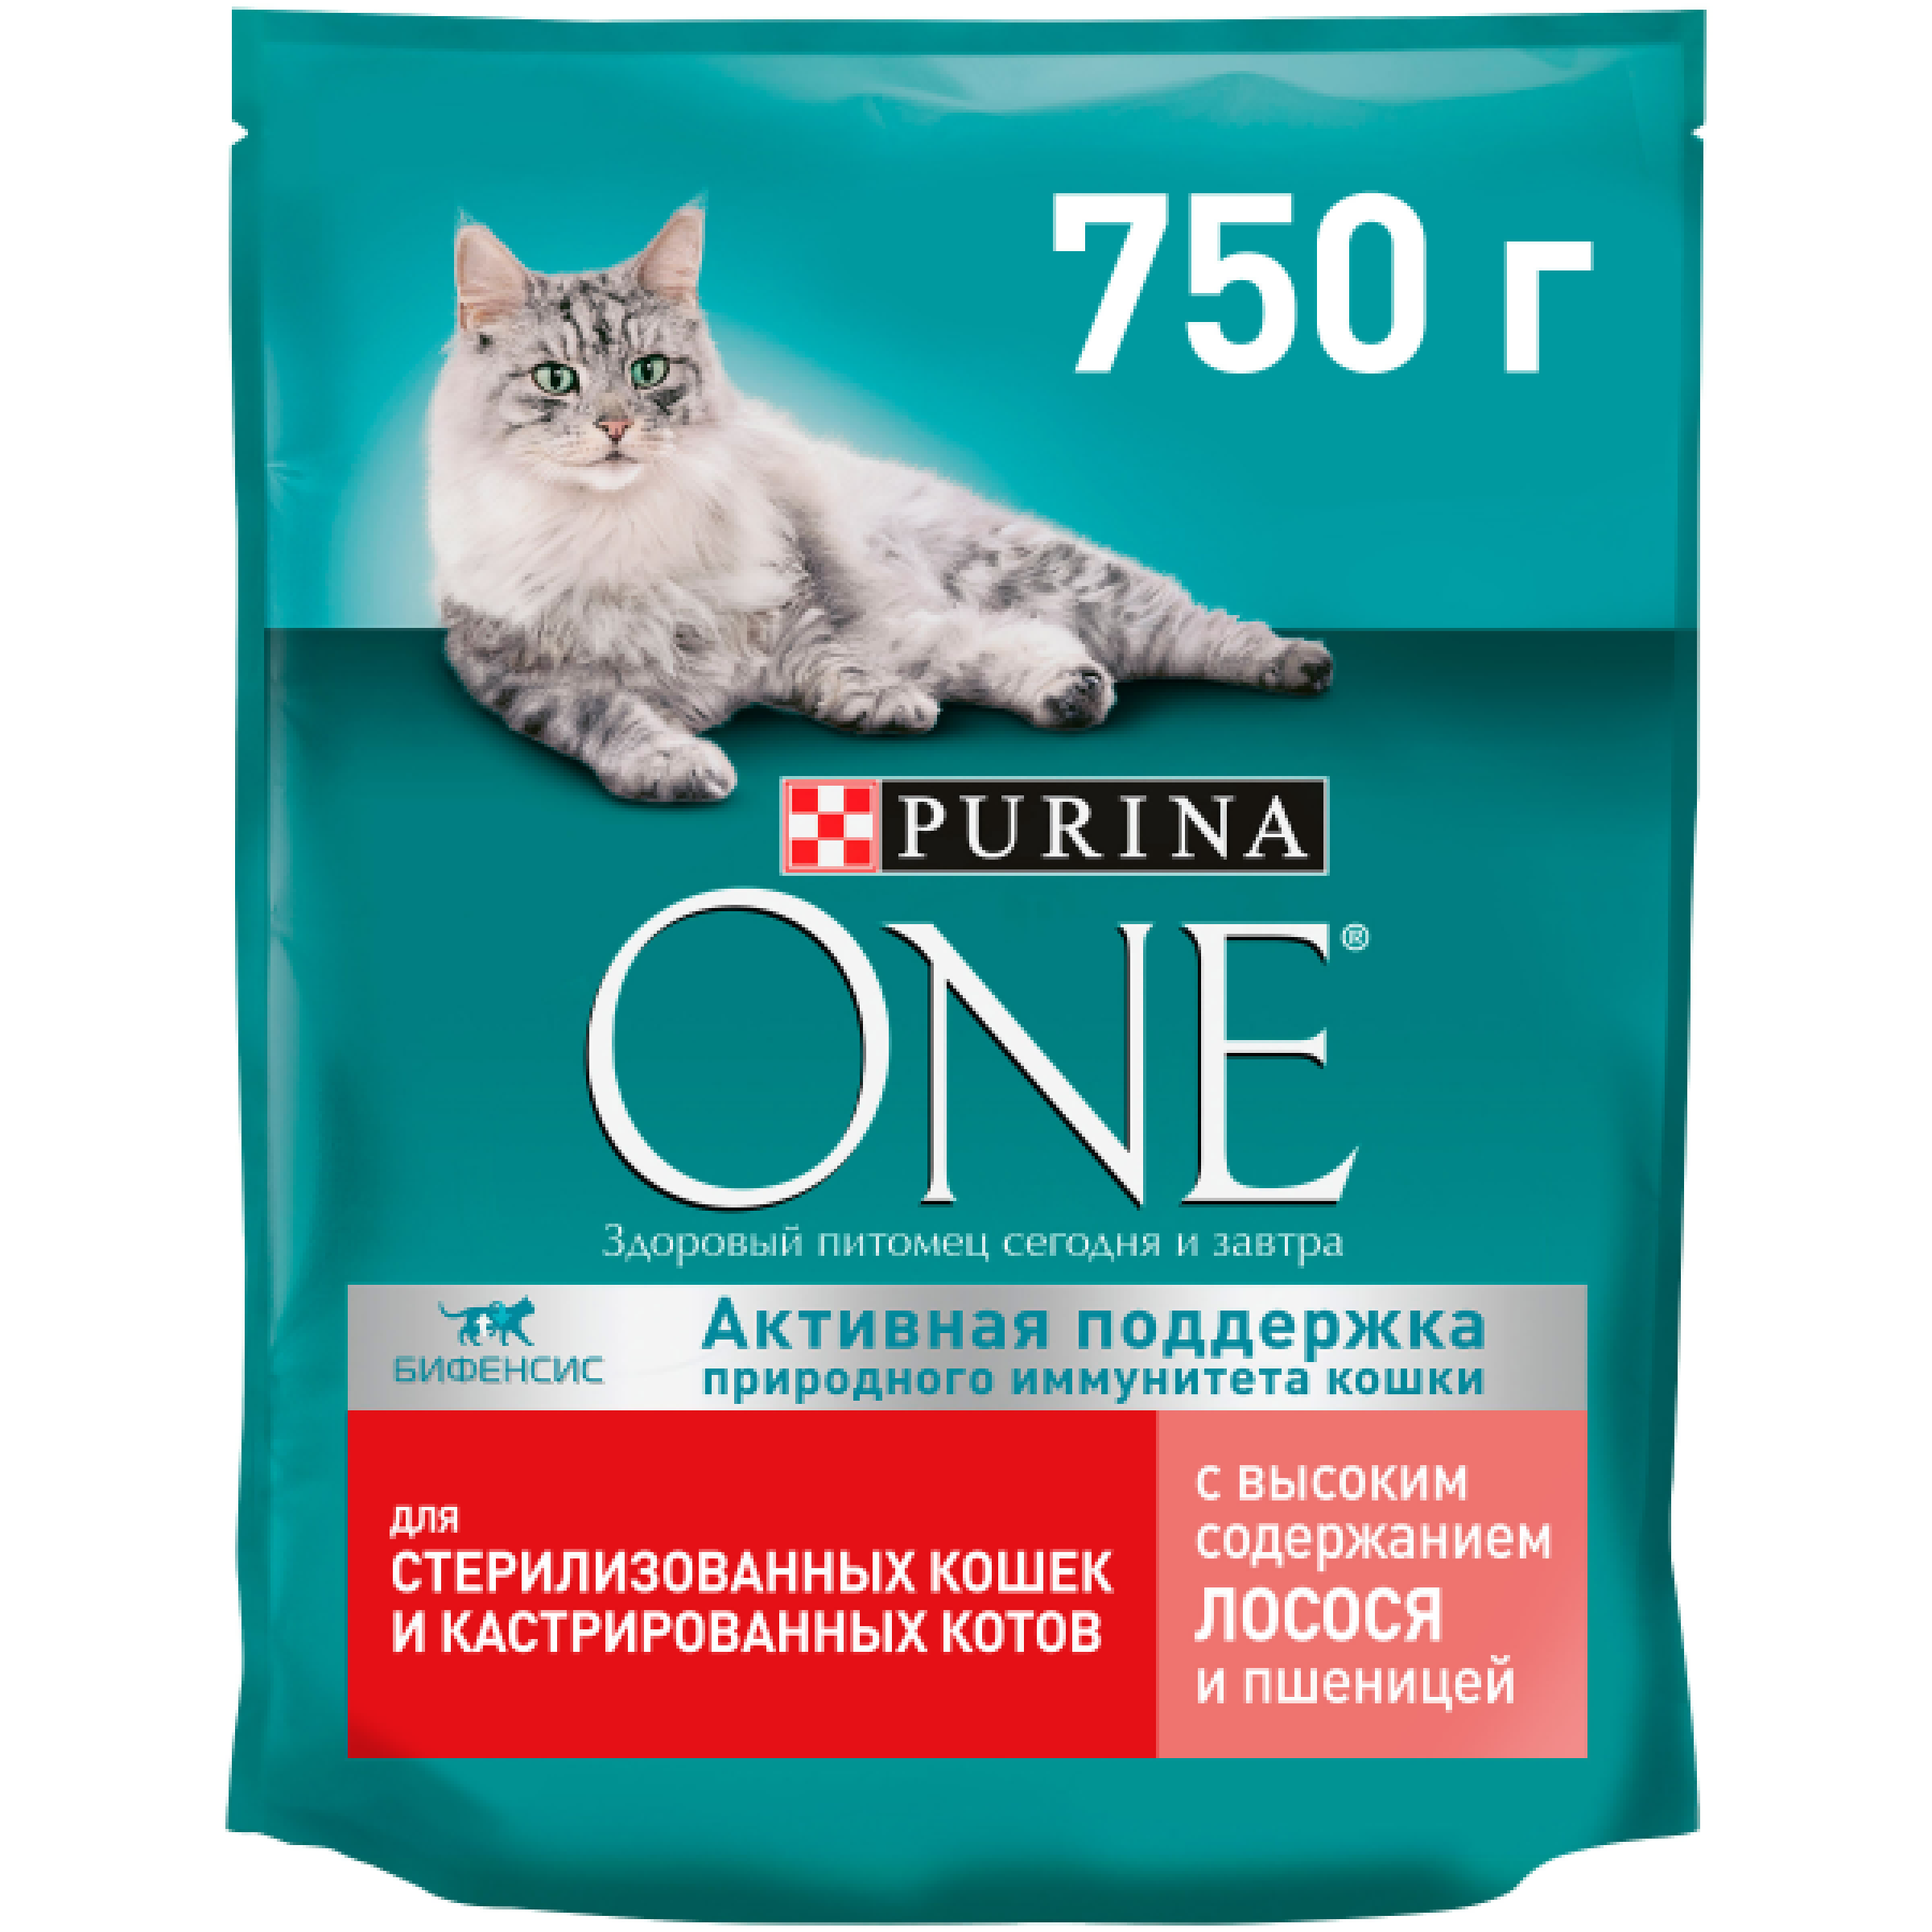 Сухой корм Purina One для стерилизованных кошек и котов с лососем и пшеницей, 750 г